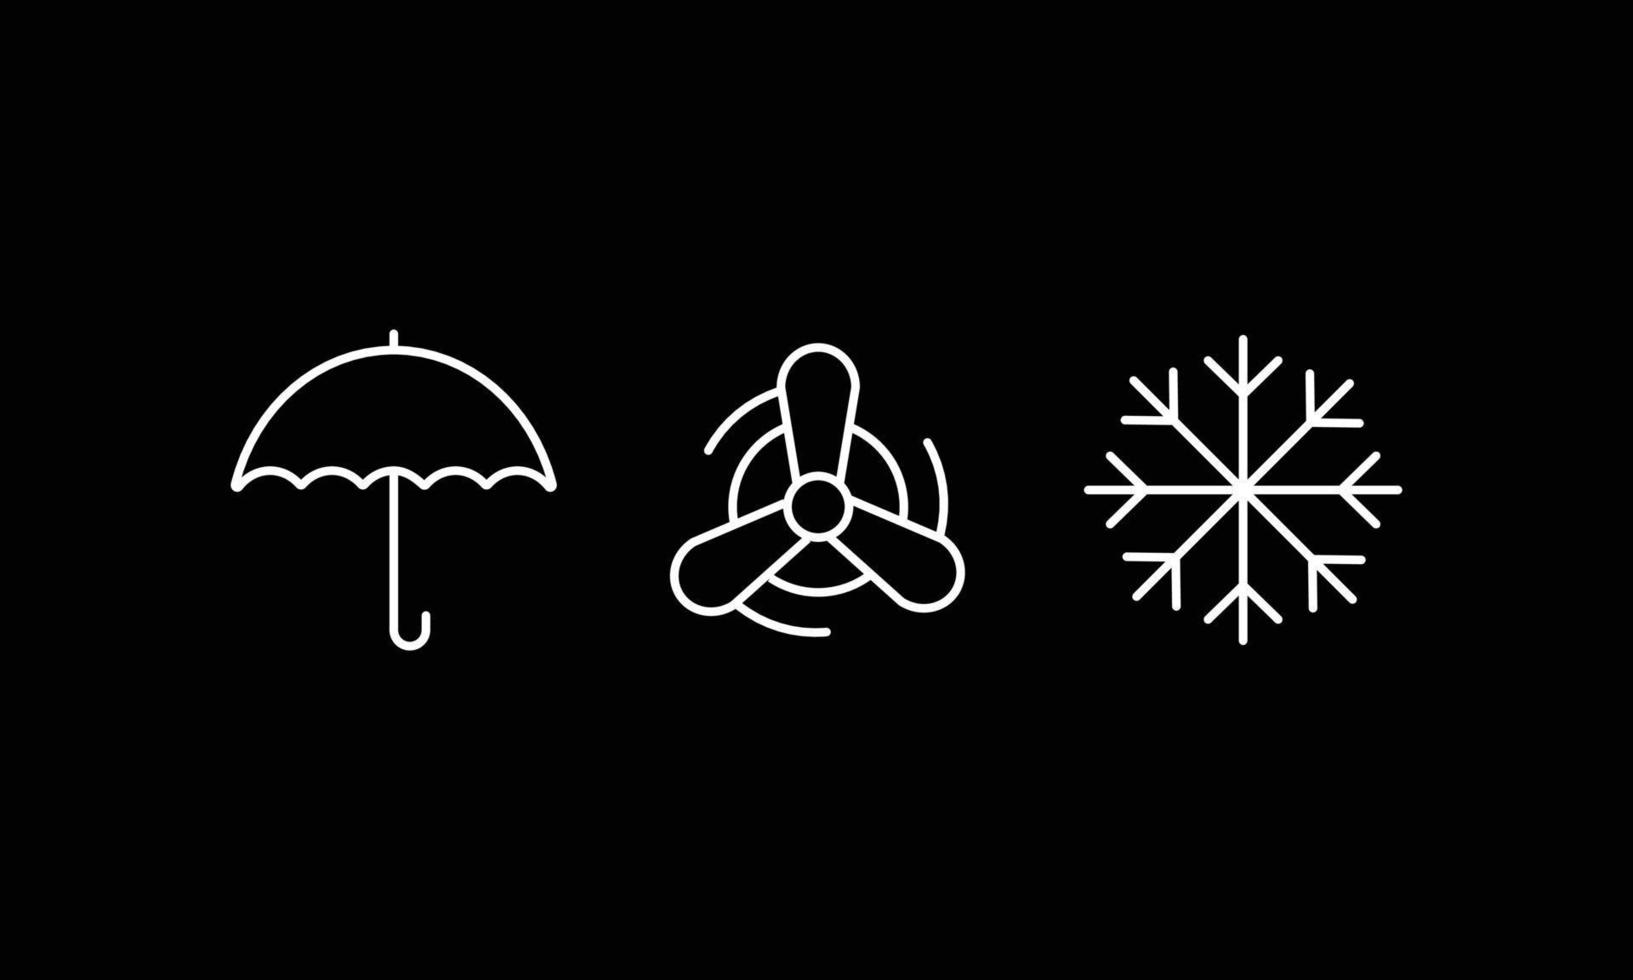 illustrazioni semplici e piatte di icone di ombrelli, ruote e fiocchi di neve vettore